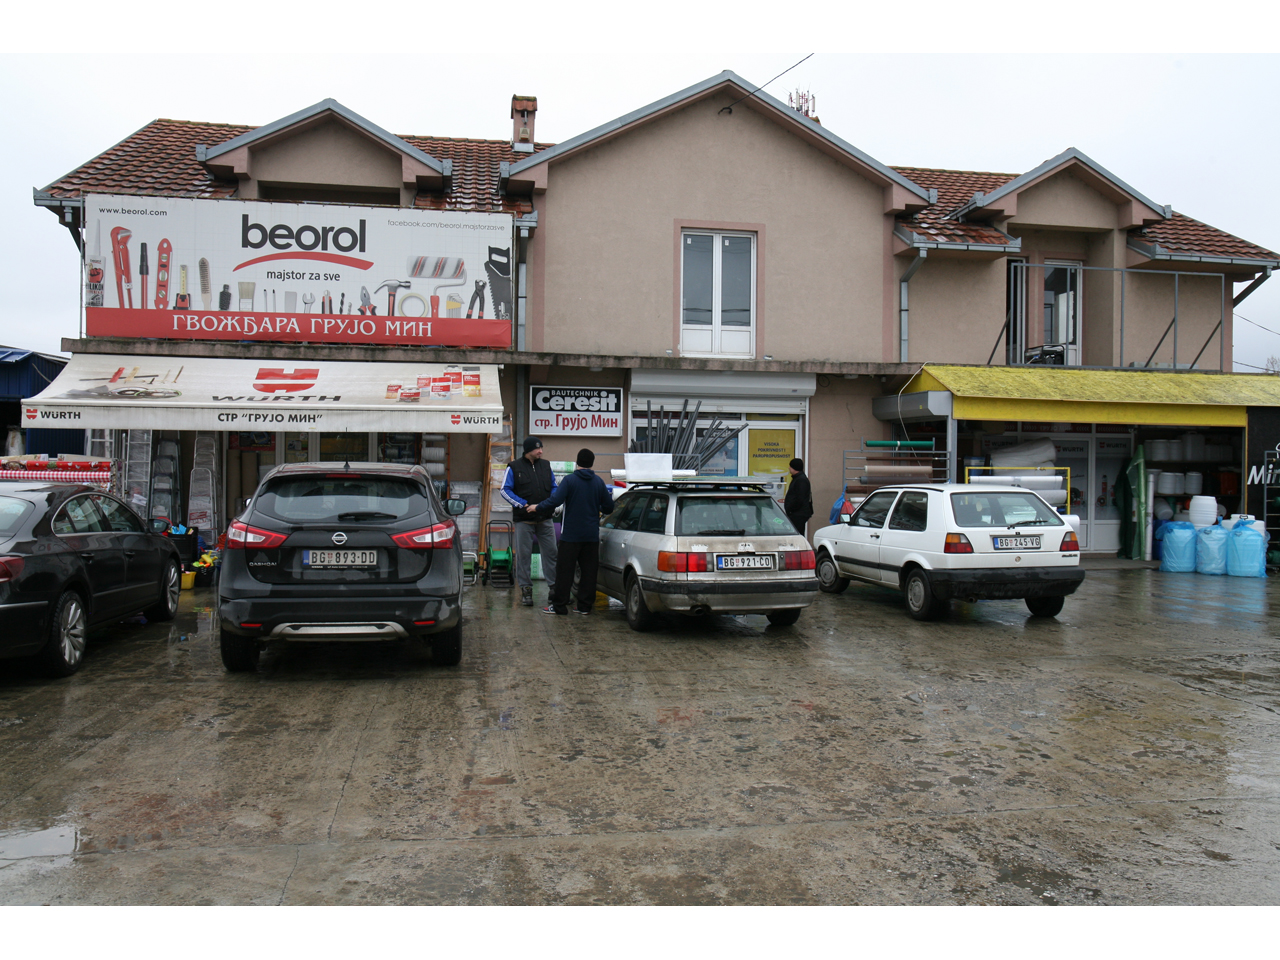 Slika 1 - FARBARA I GVOŽĐARA GRUJO MIN Vodovod i kanalizacija Beograd